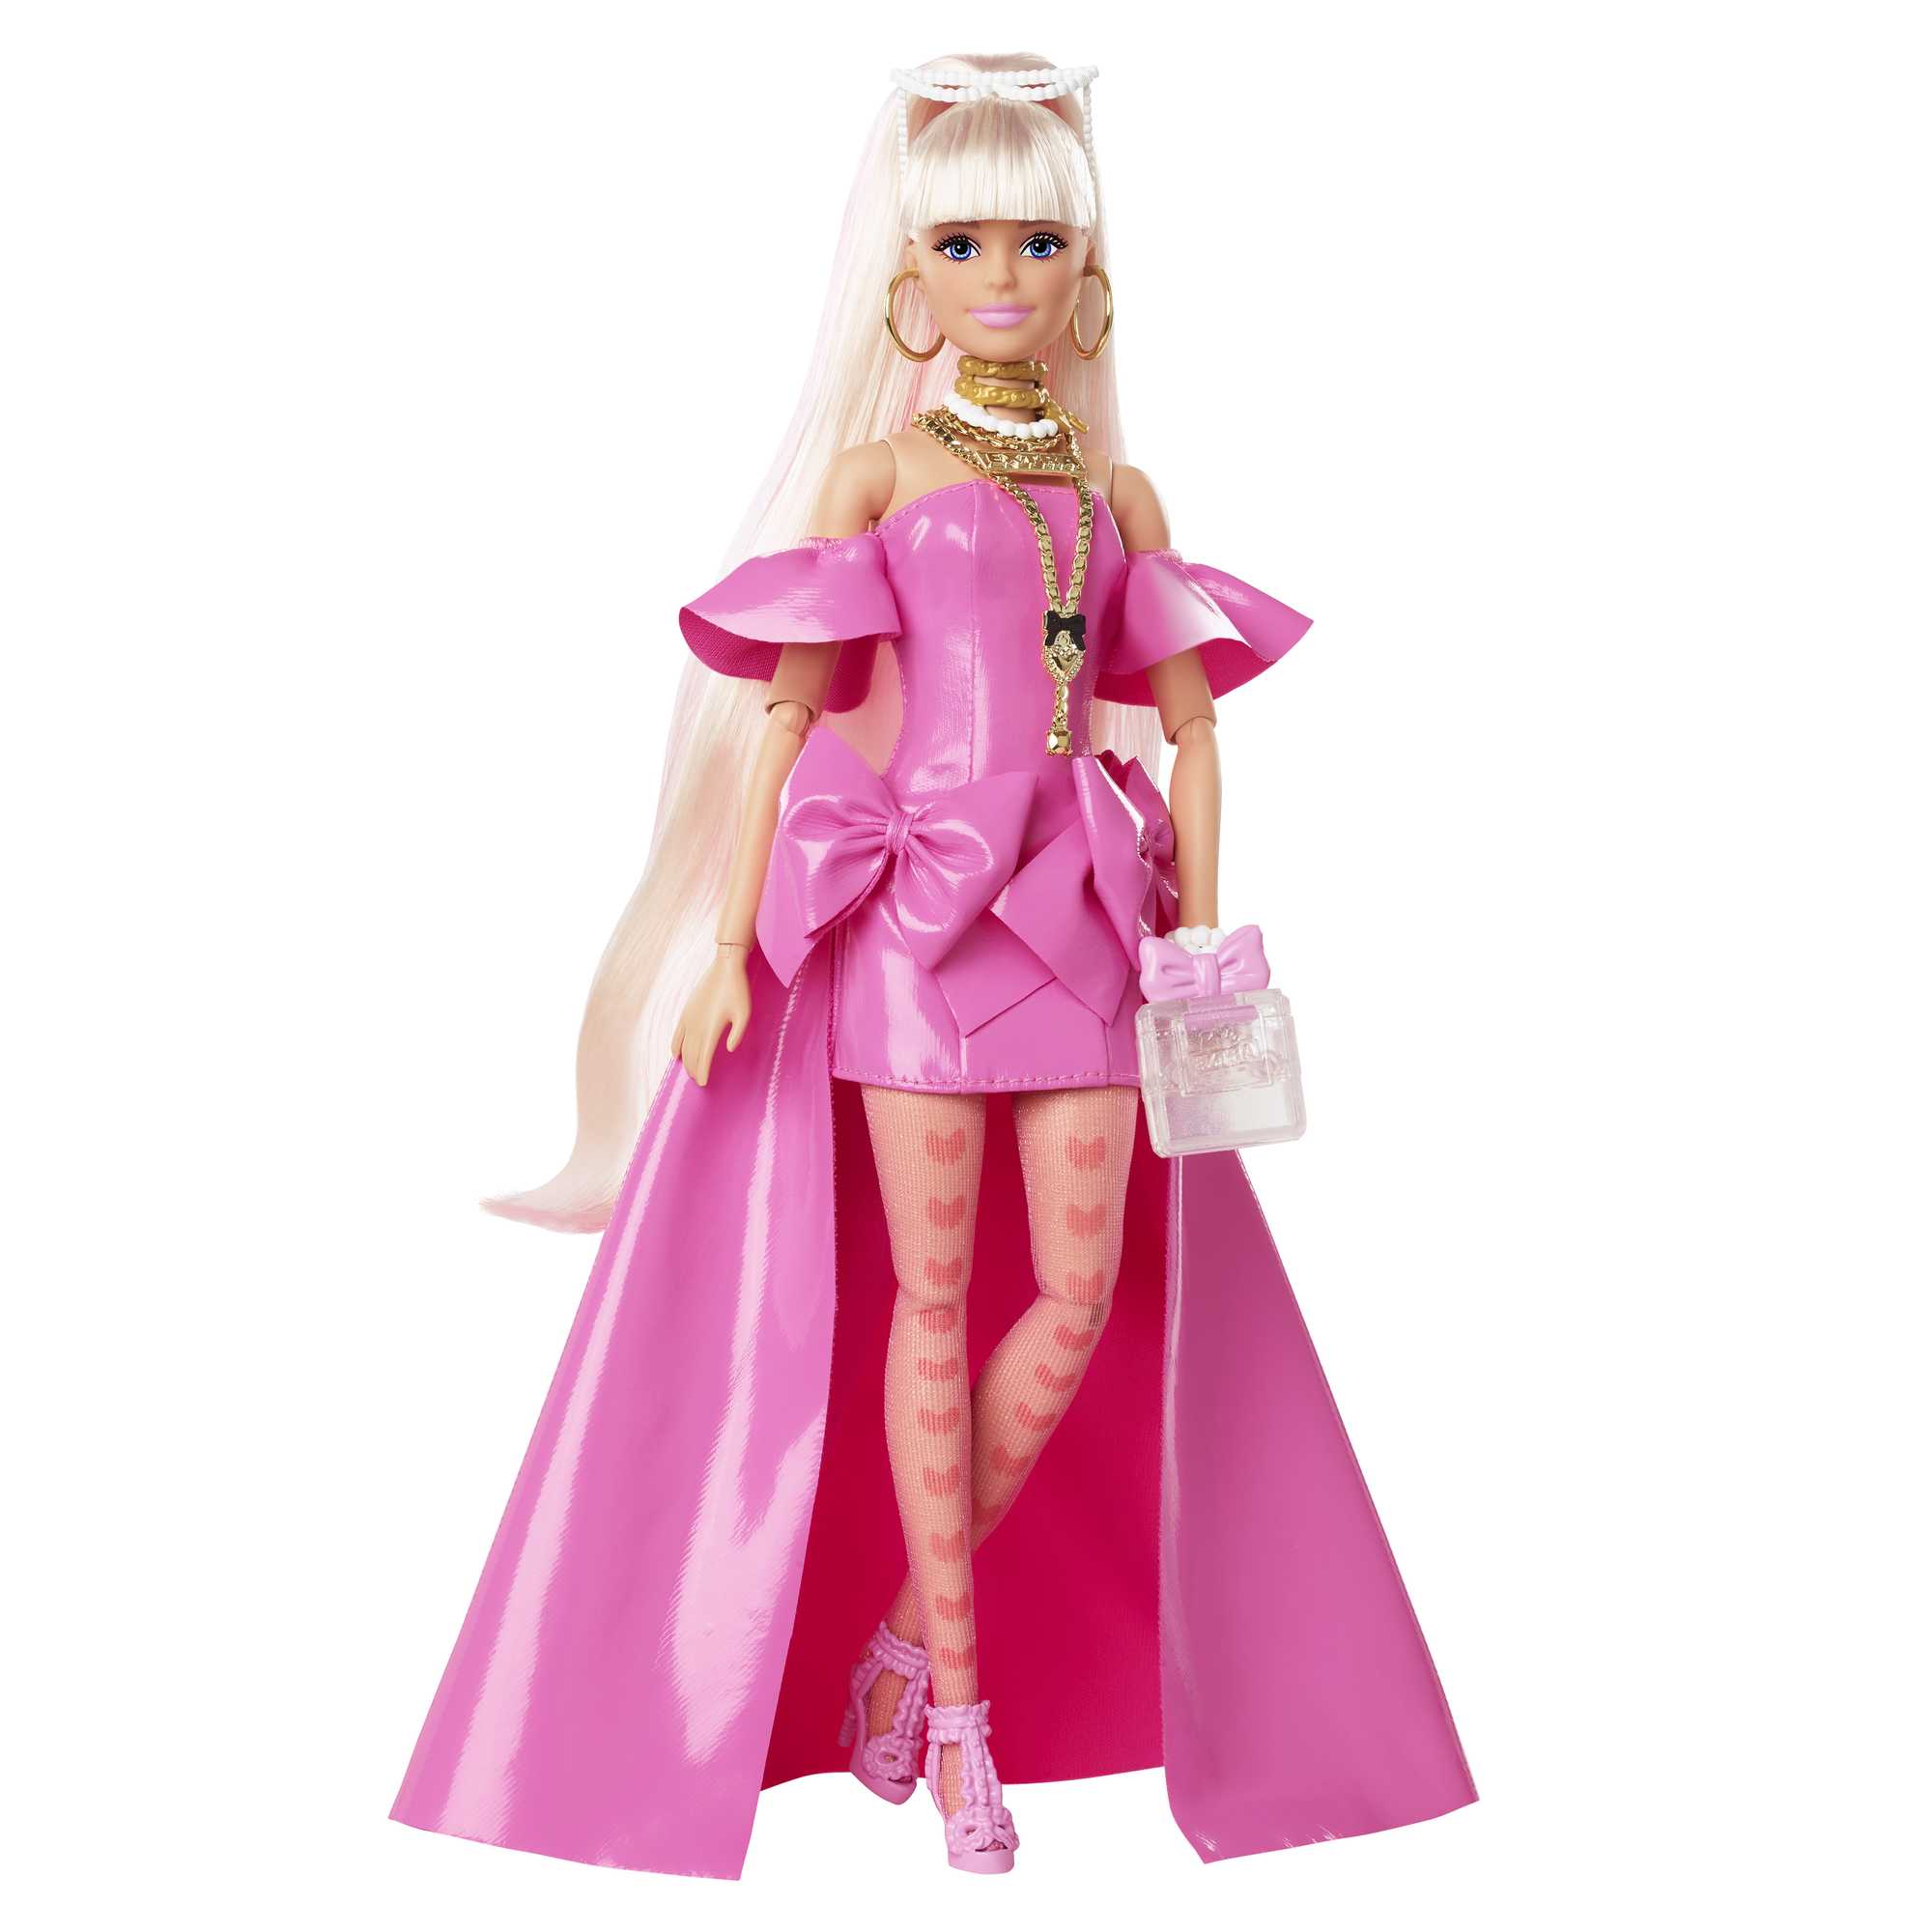 Modèle robe chic,robe et accessoires barbie princesse diana,au